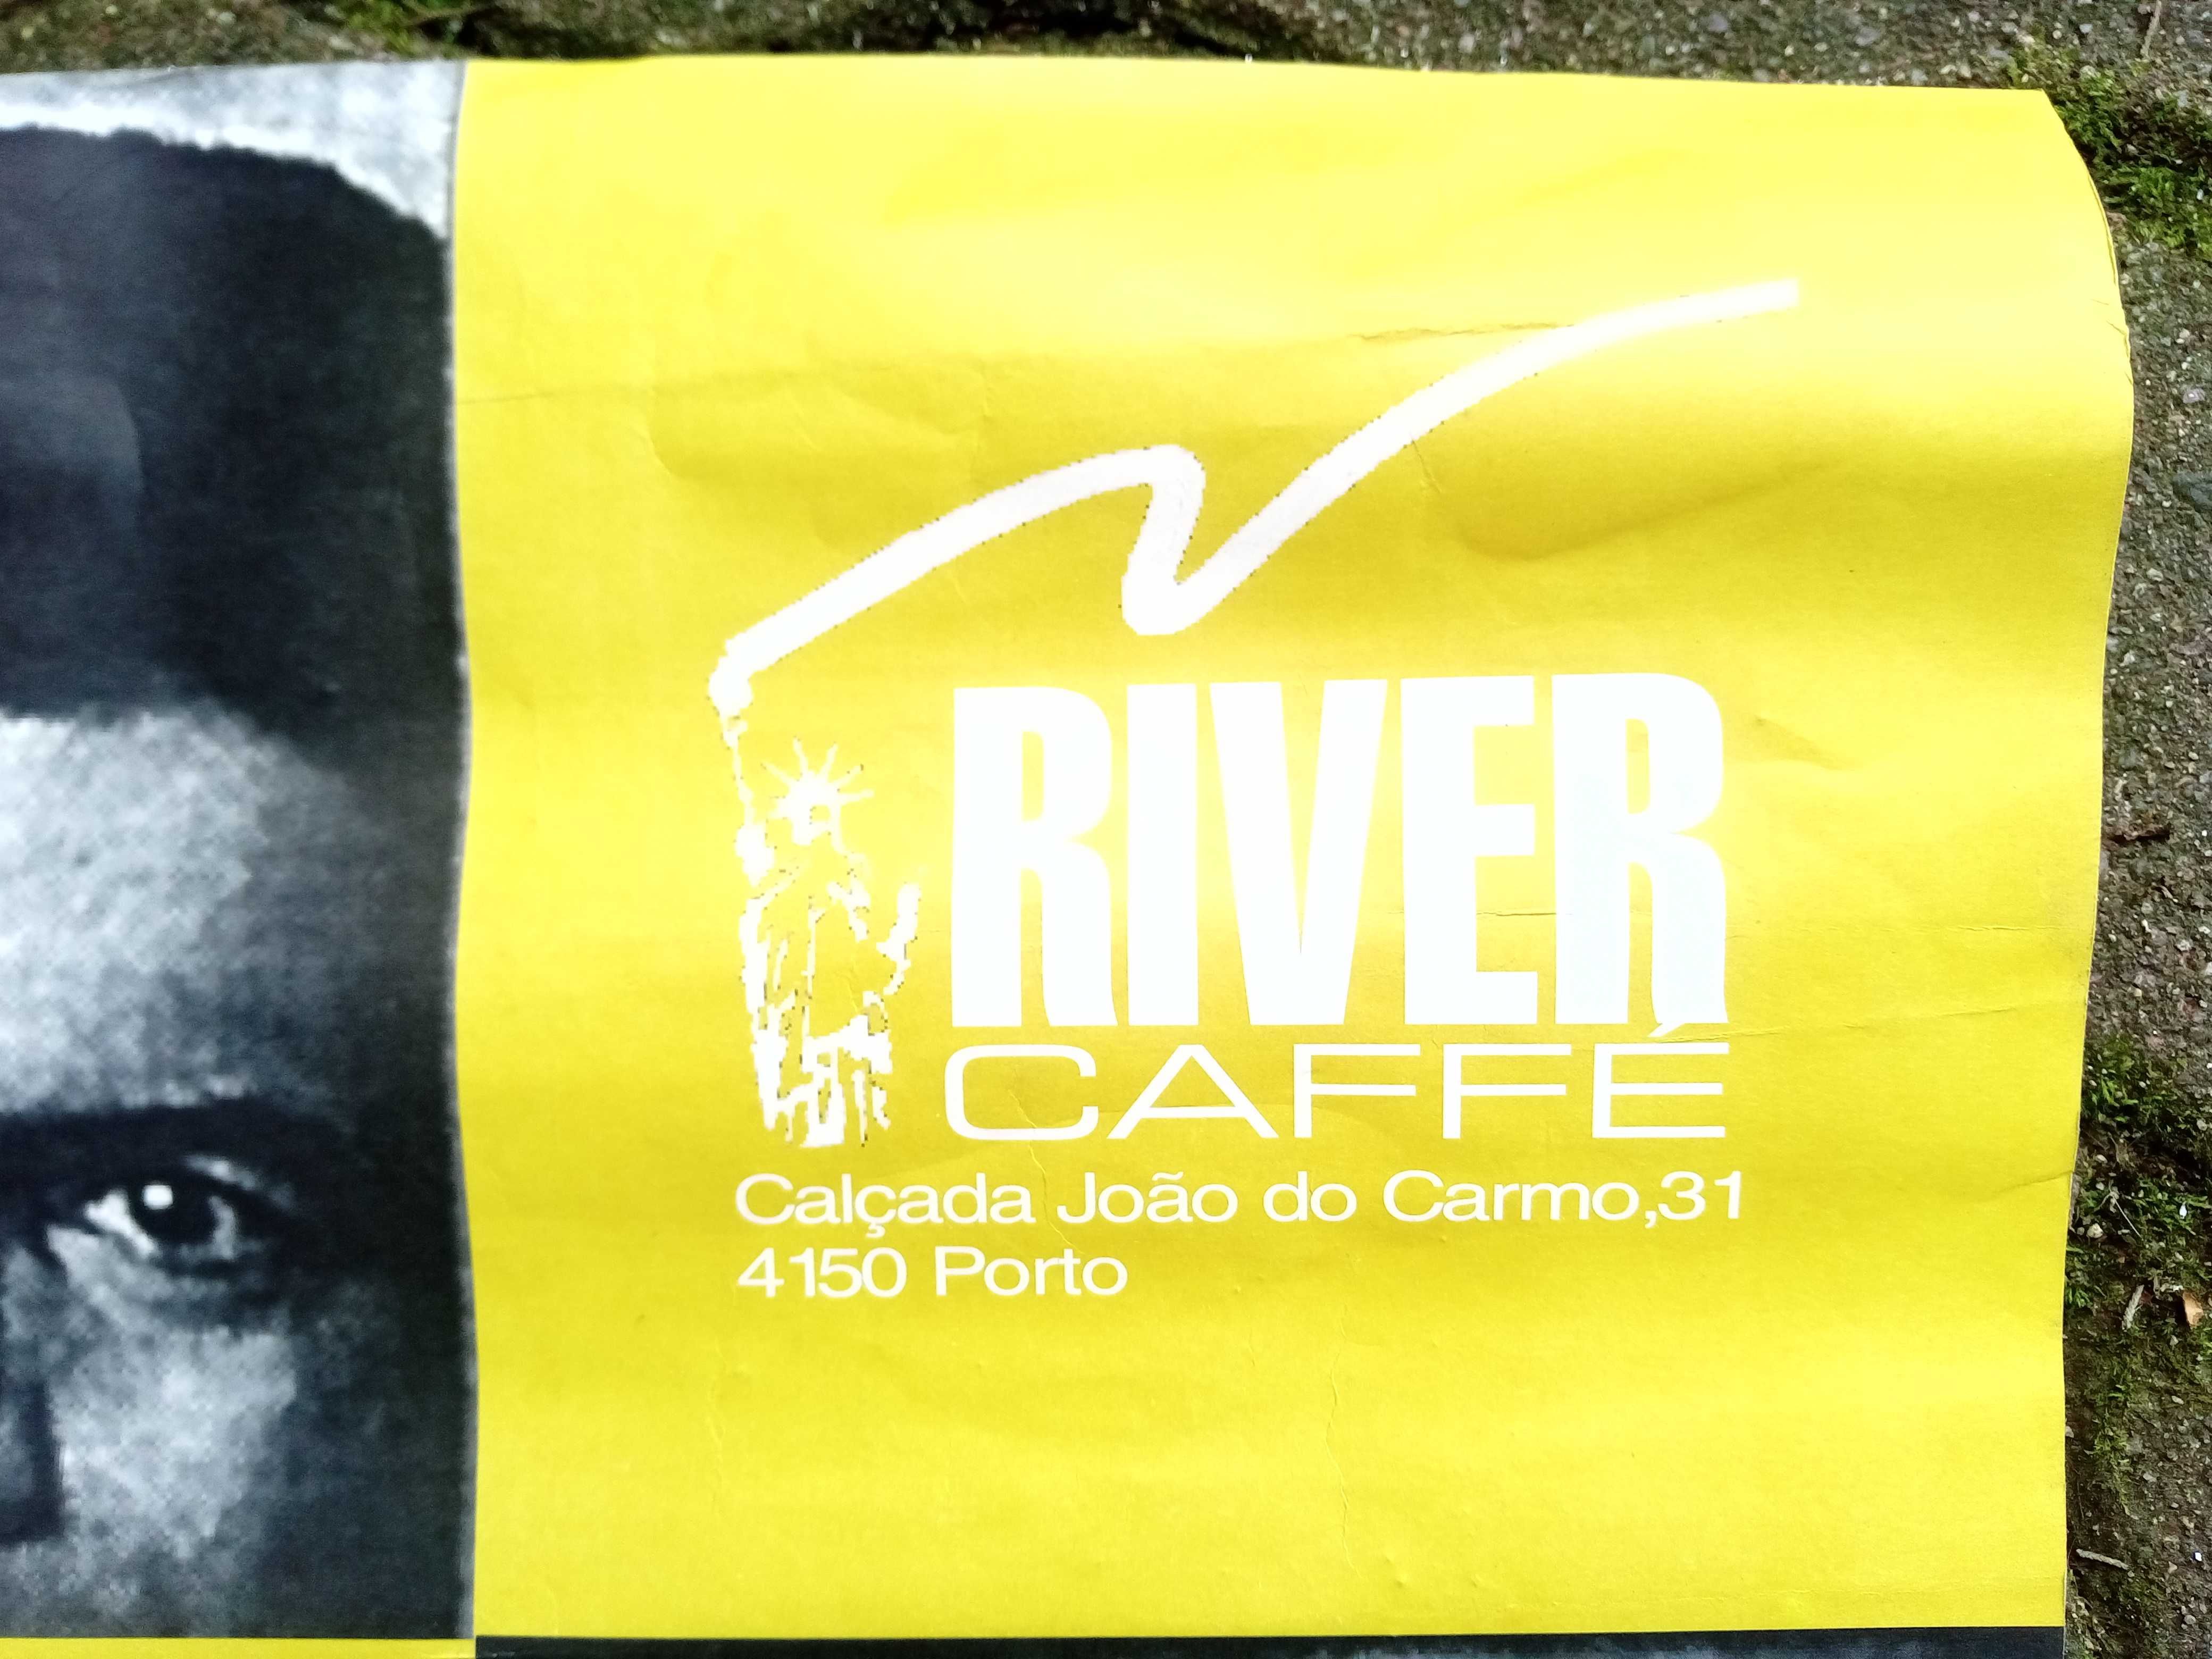 Poster GNR / River Caffe de 1998 (ano de lançamento do Mosquito)